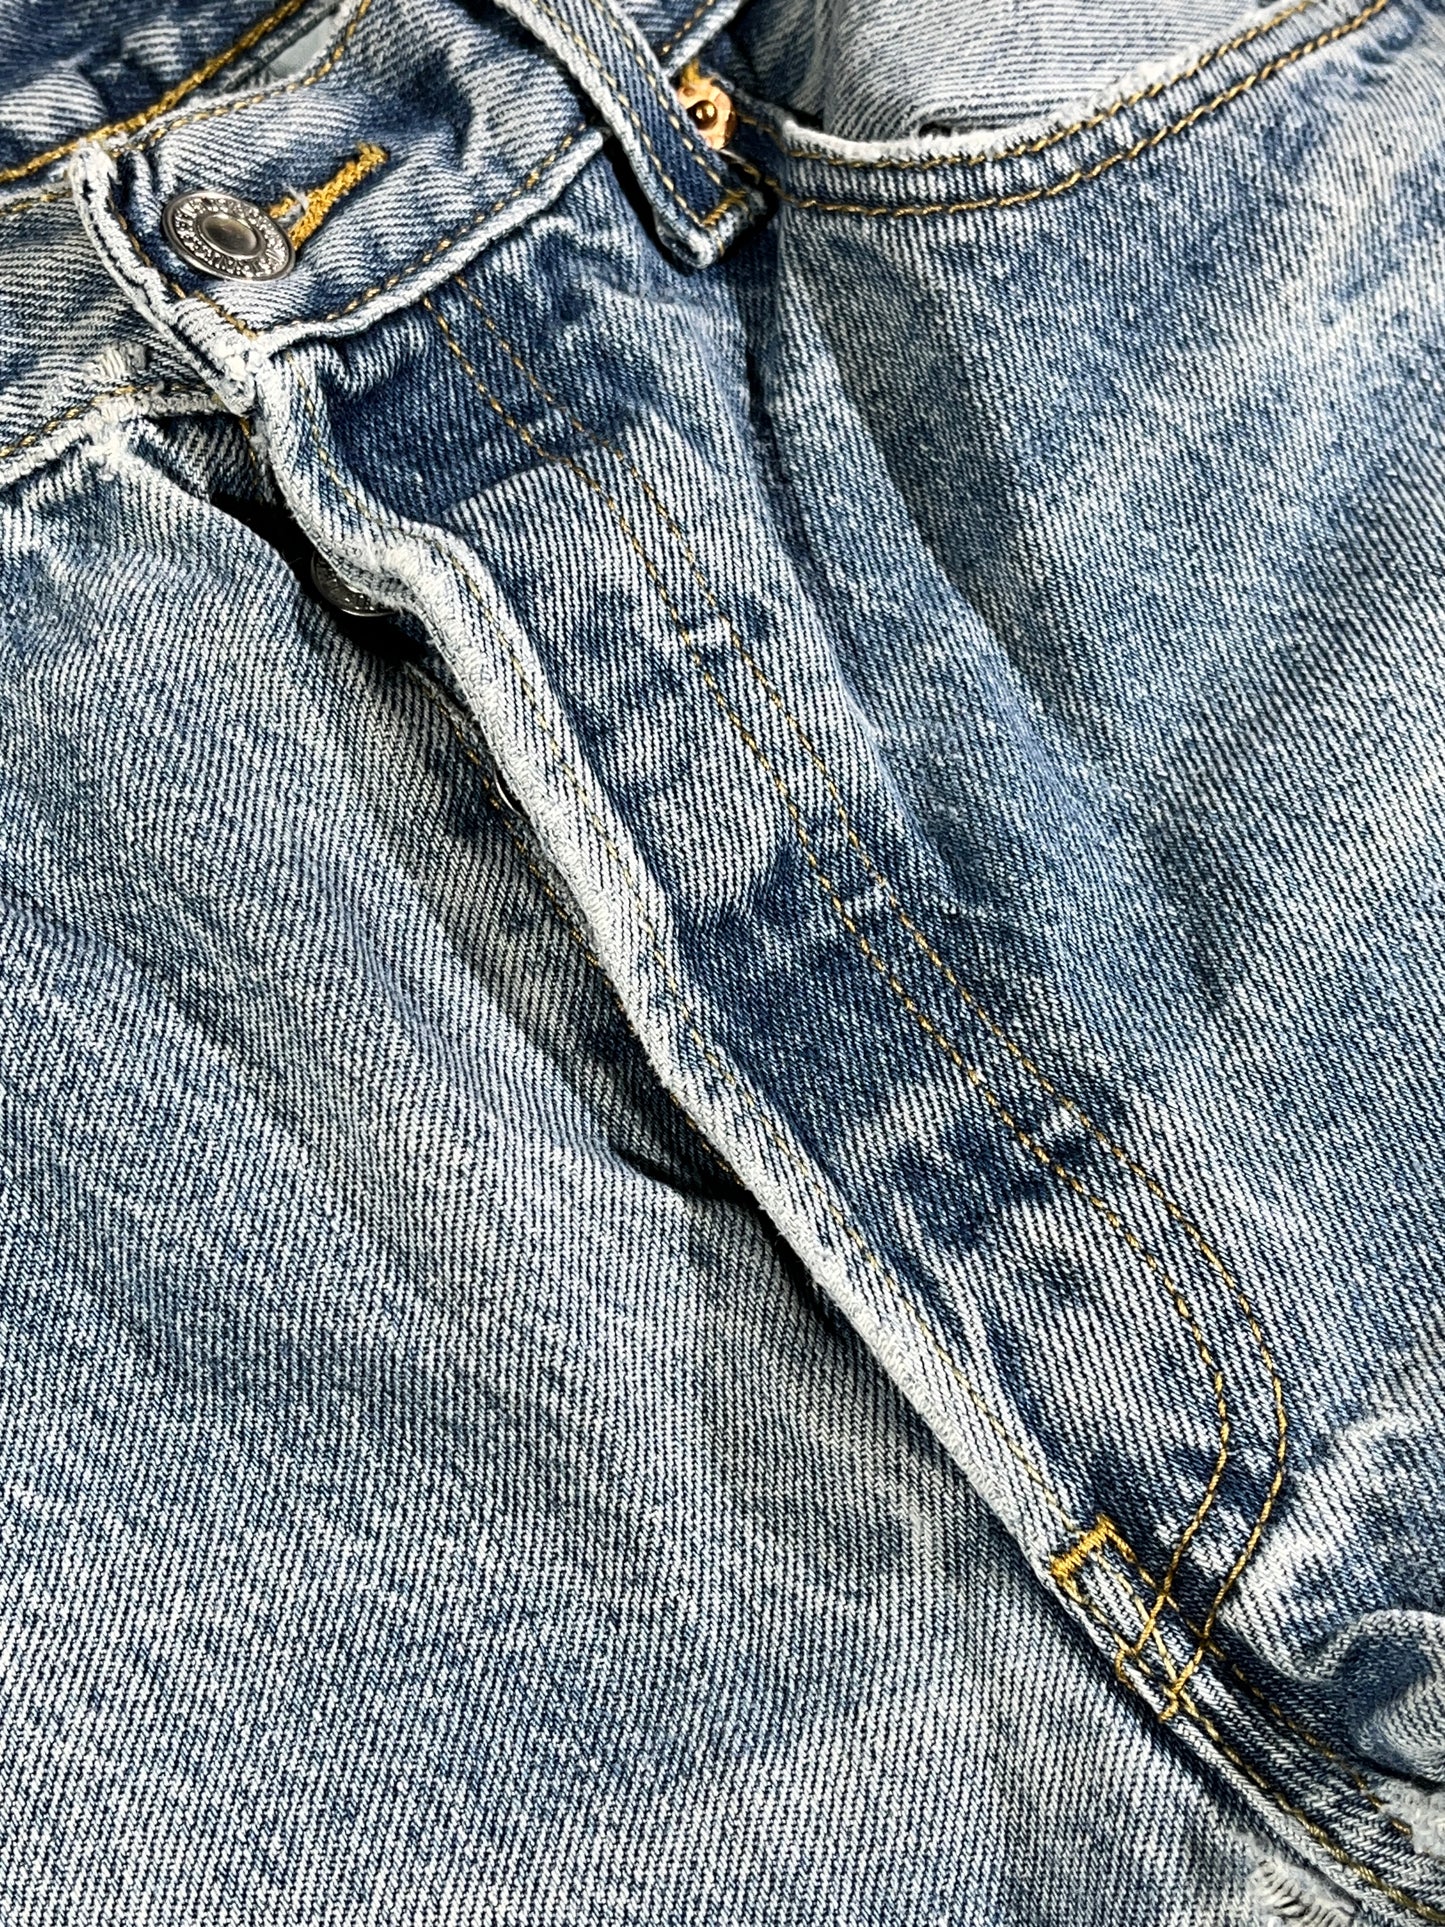 Vintage Levis Jeans 501XX Denim Pants